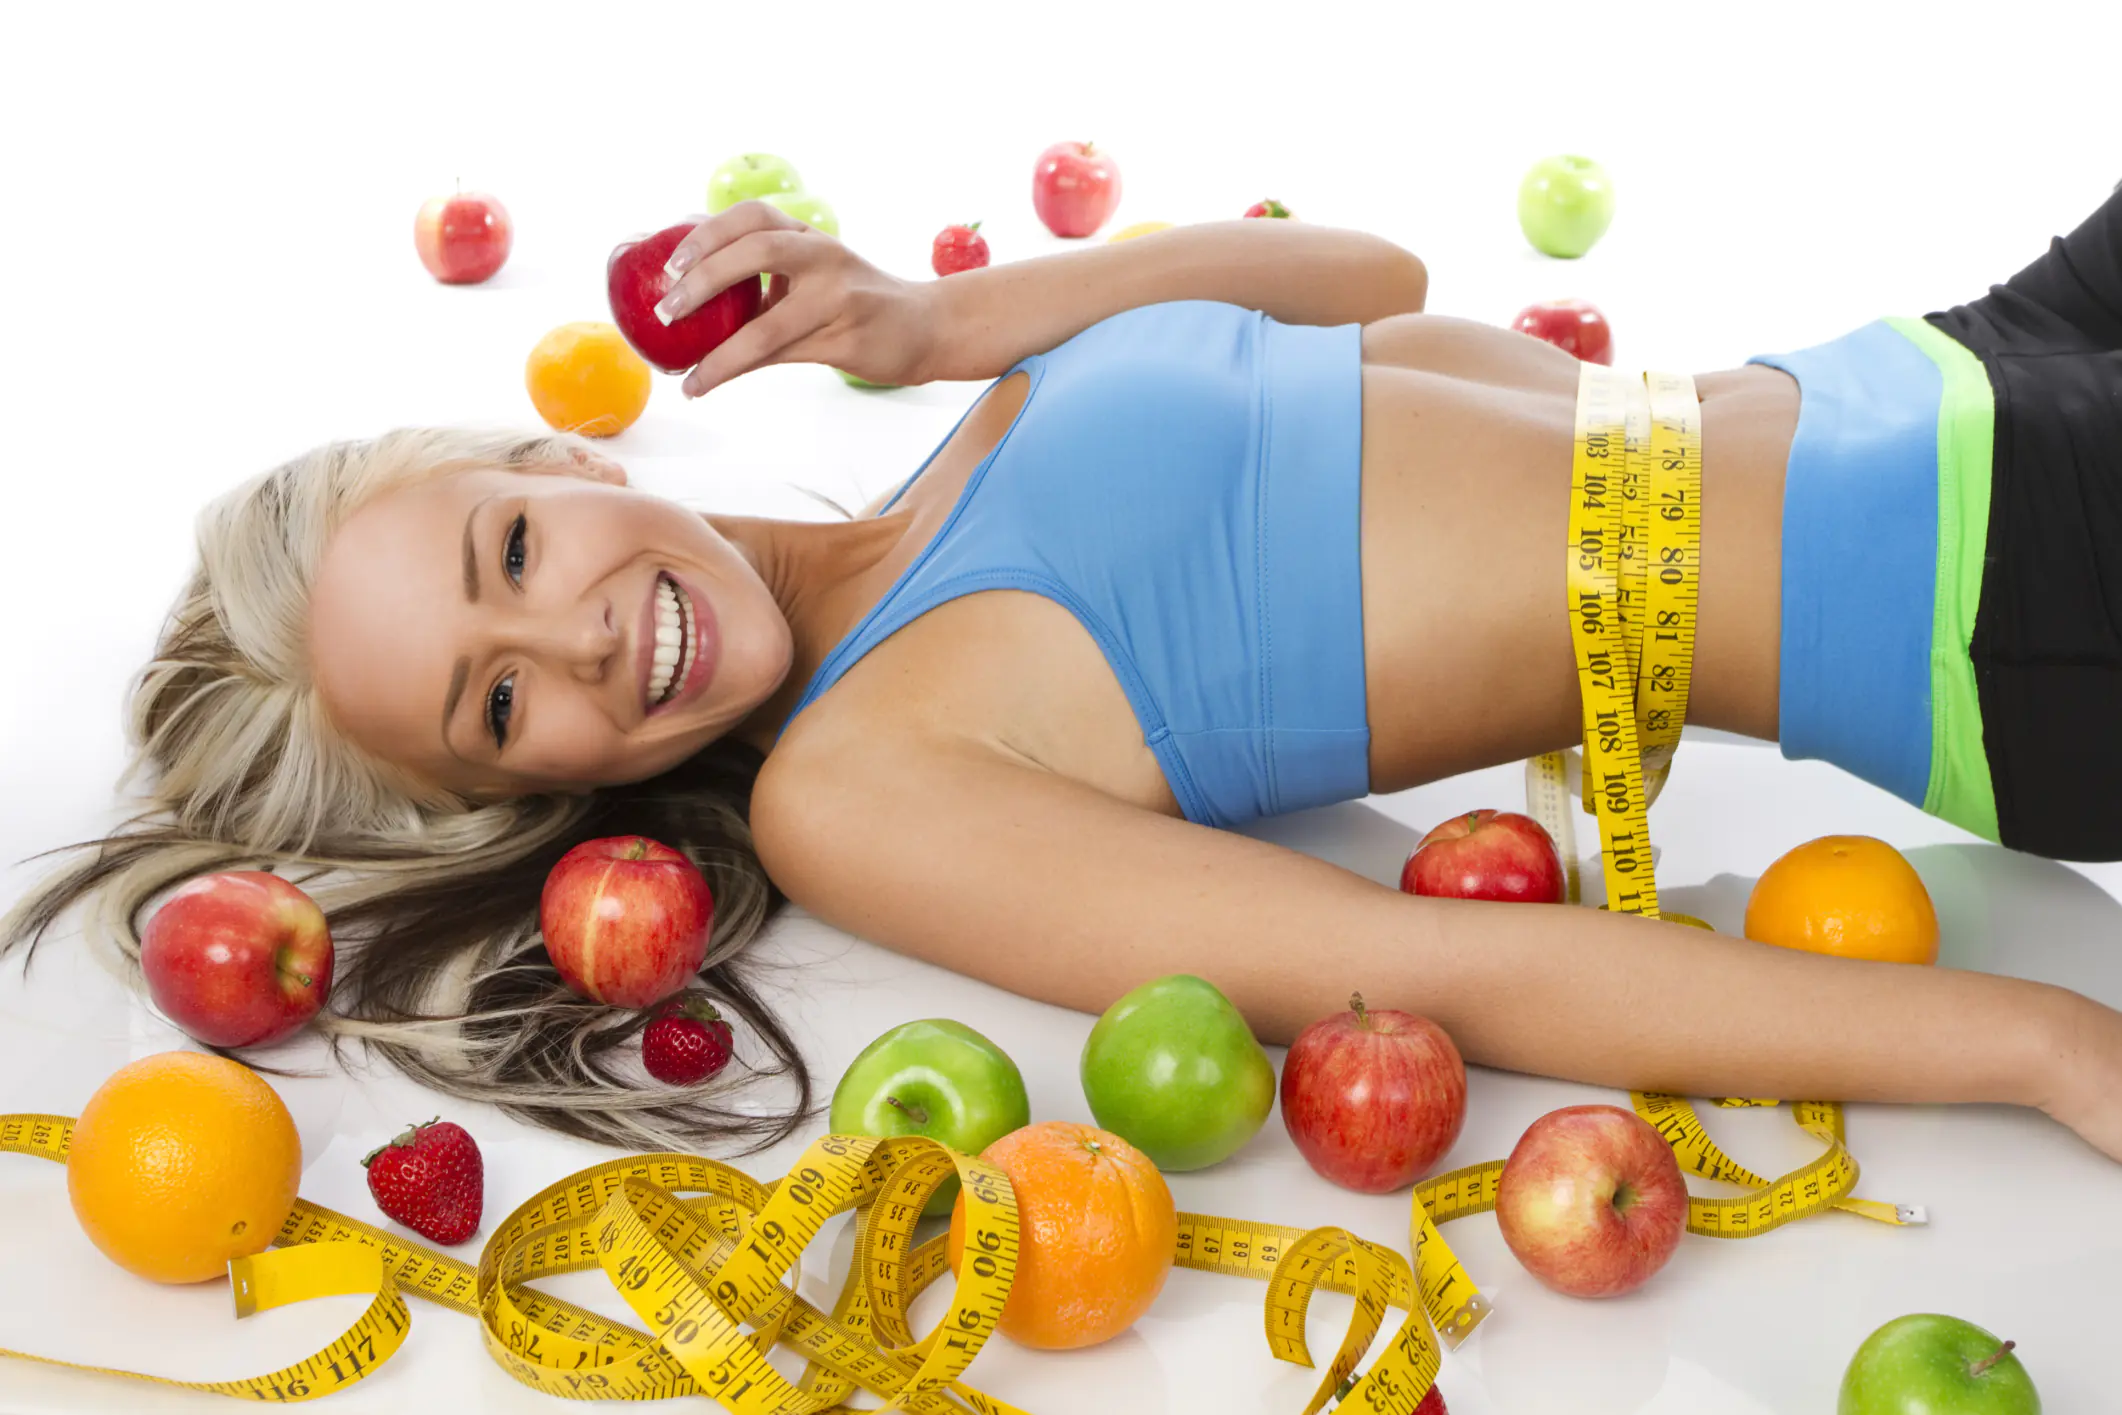 Vilka viktminskningsdieter ger resultat och är inte skadliga för hälsan?